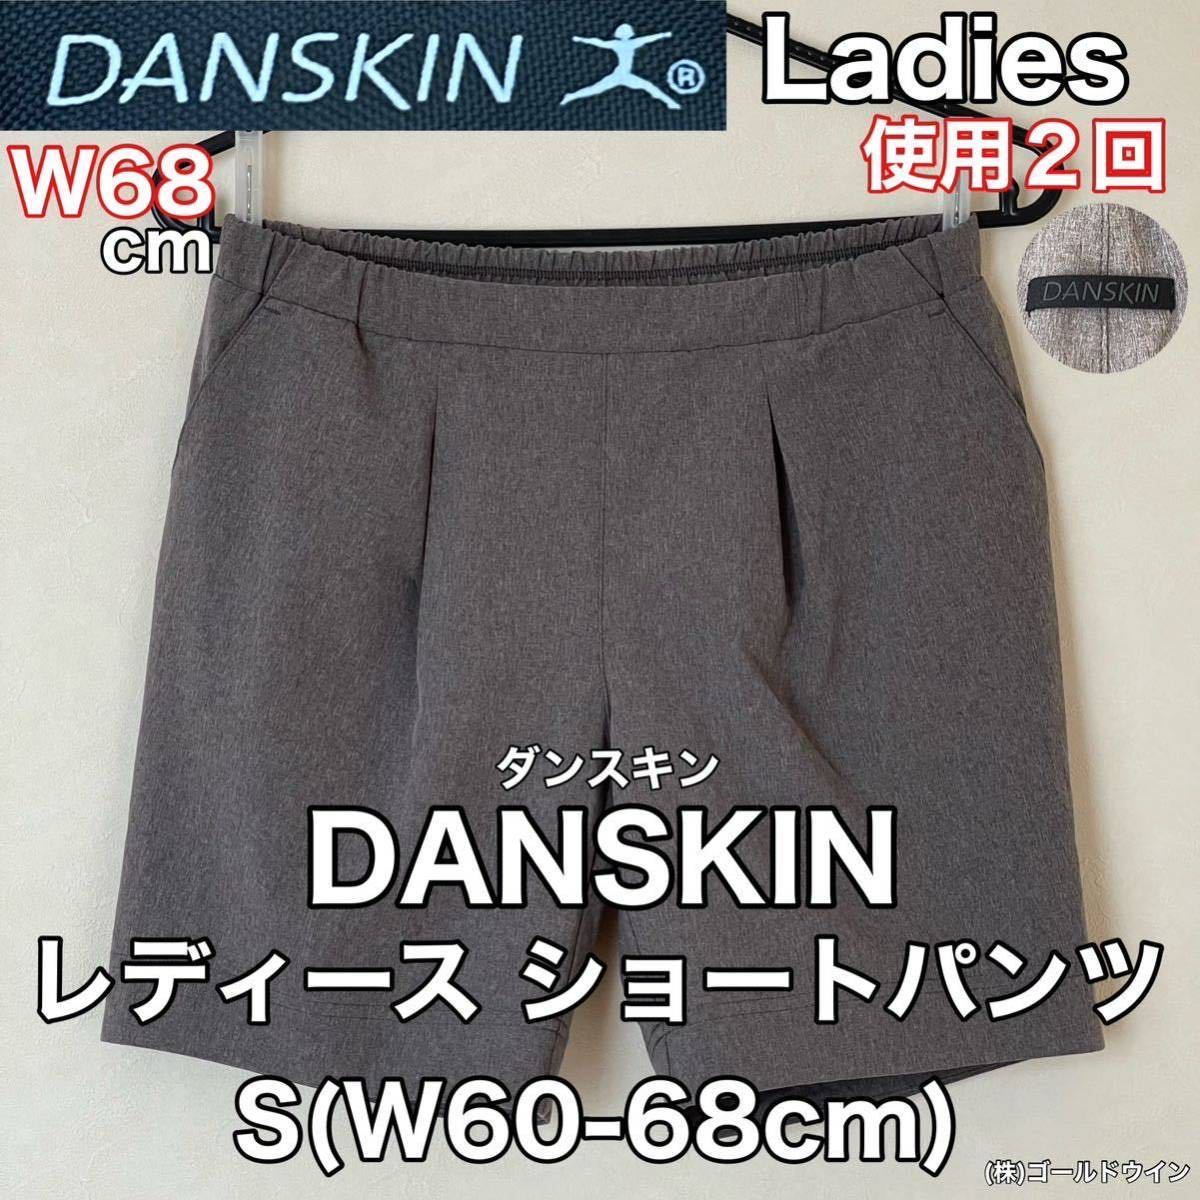 超美品 DANSKIN(ダンスキン)レディース ショート パンツ S(W60-68cm)使用2回 グレー スポーツ アウトドア ハーフ (株)ゴールドウイン